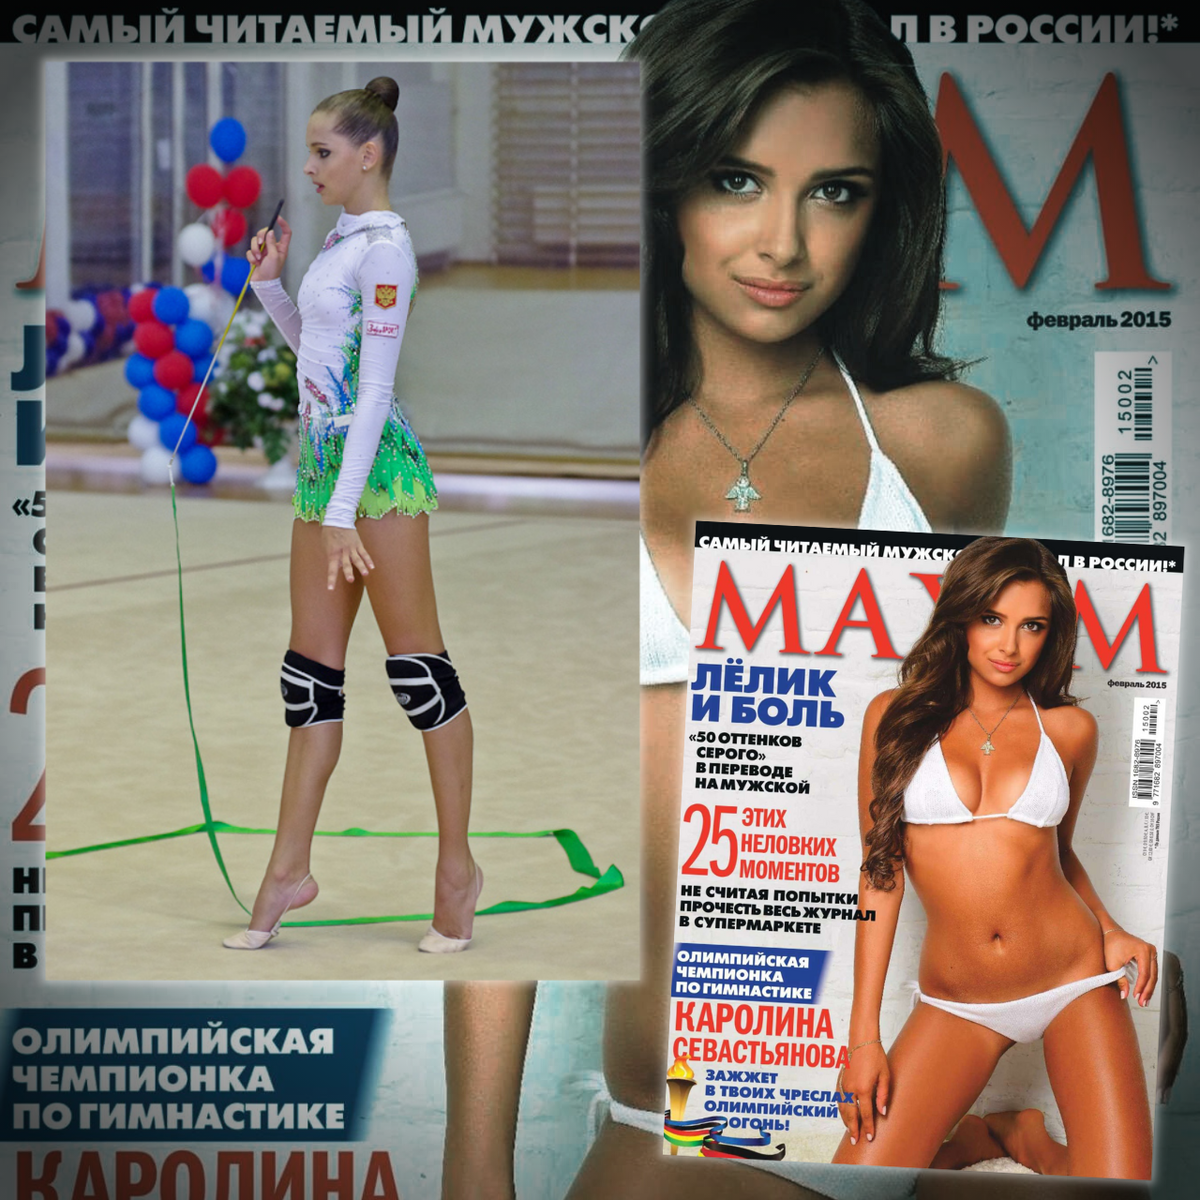 В день рождения Каролины Севастьяновой журнал MAXIM опубликовал «горячие» фото гимнастки